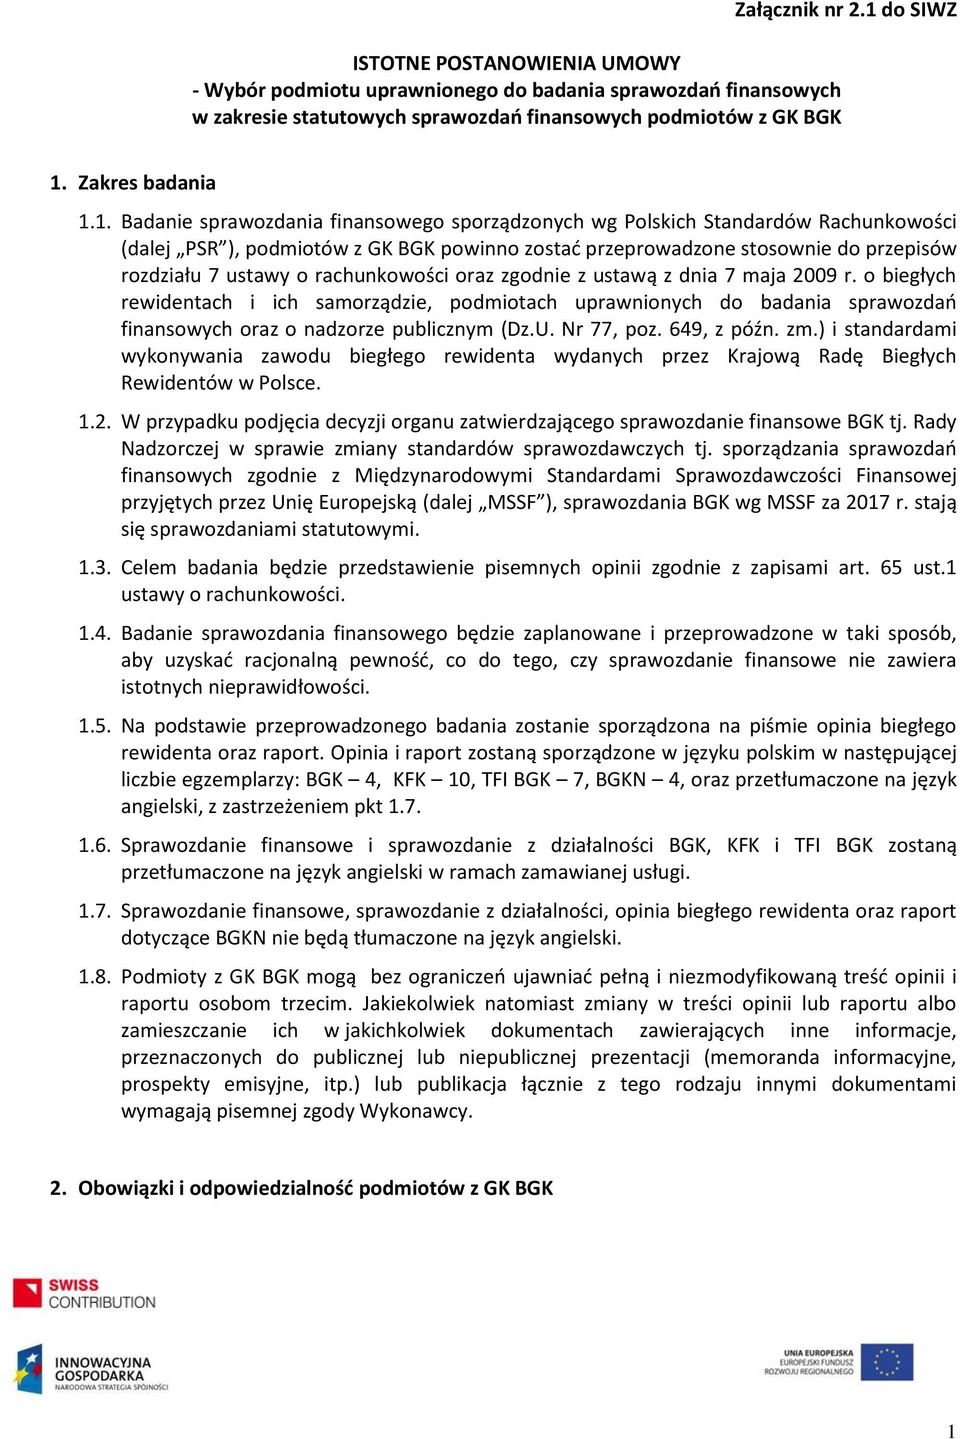 1. Badanie sprawozdania finansowego sporządzonych wg Polskich Standardów Rachunkowości (dalej PSR ), podmiotów z GK BGK powinno zostać przeprowadzone stosownie do przepisów rozdziału 7 ustawy o